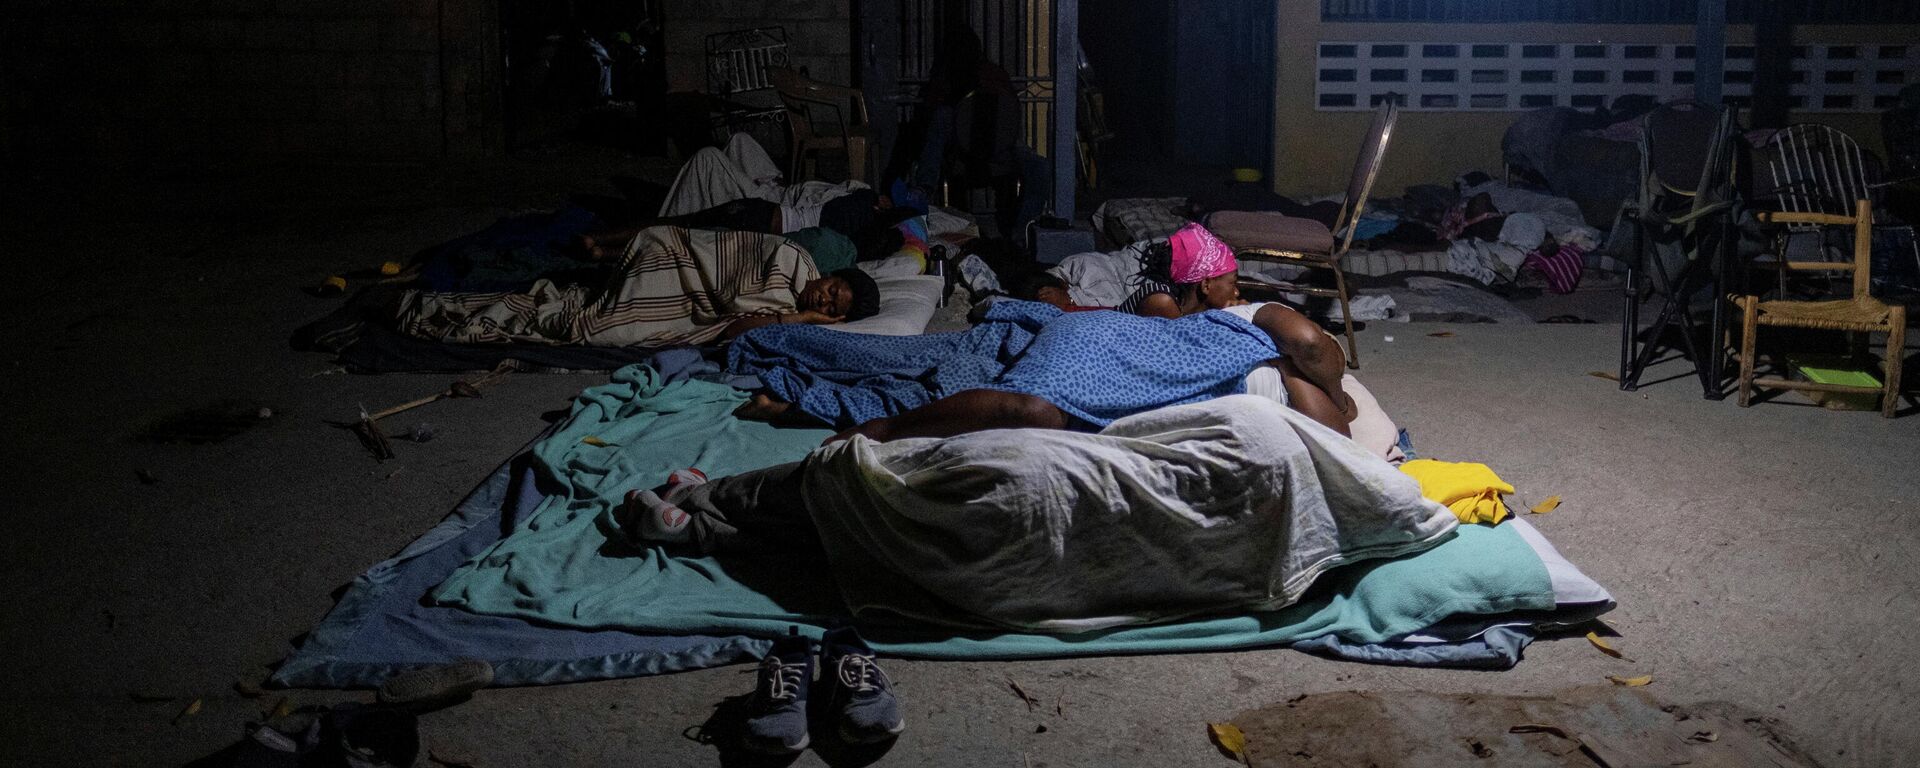 Unos haitianos duermen en la calle tras el sismo - Sputnik Mundo, 1920, 19.08.2021